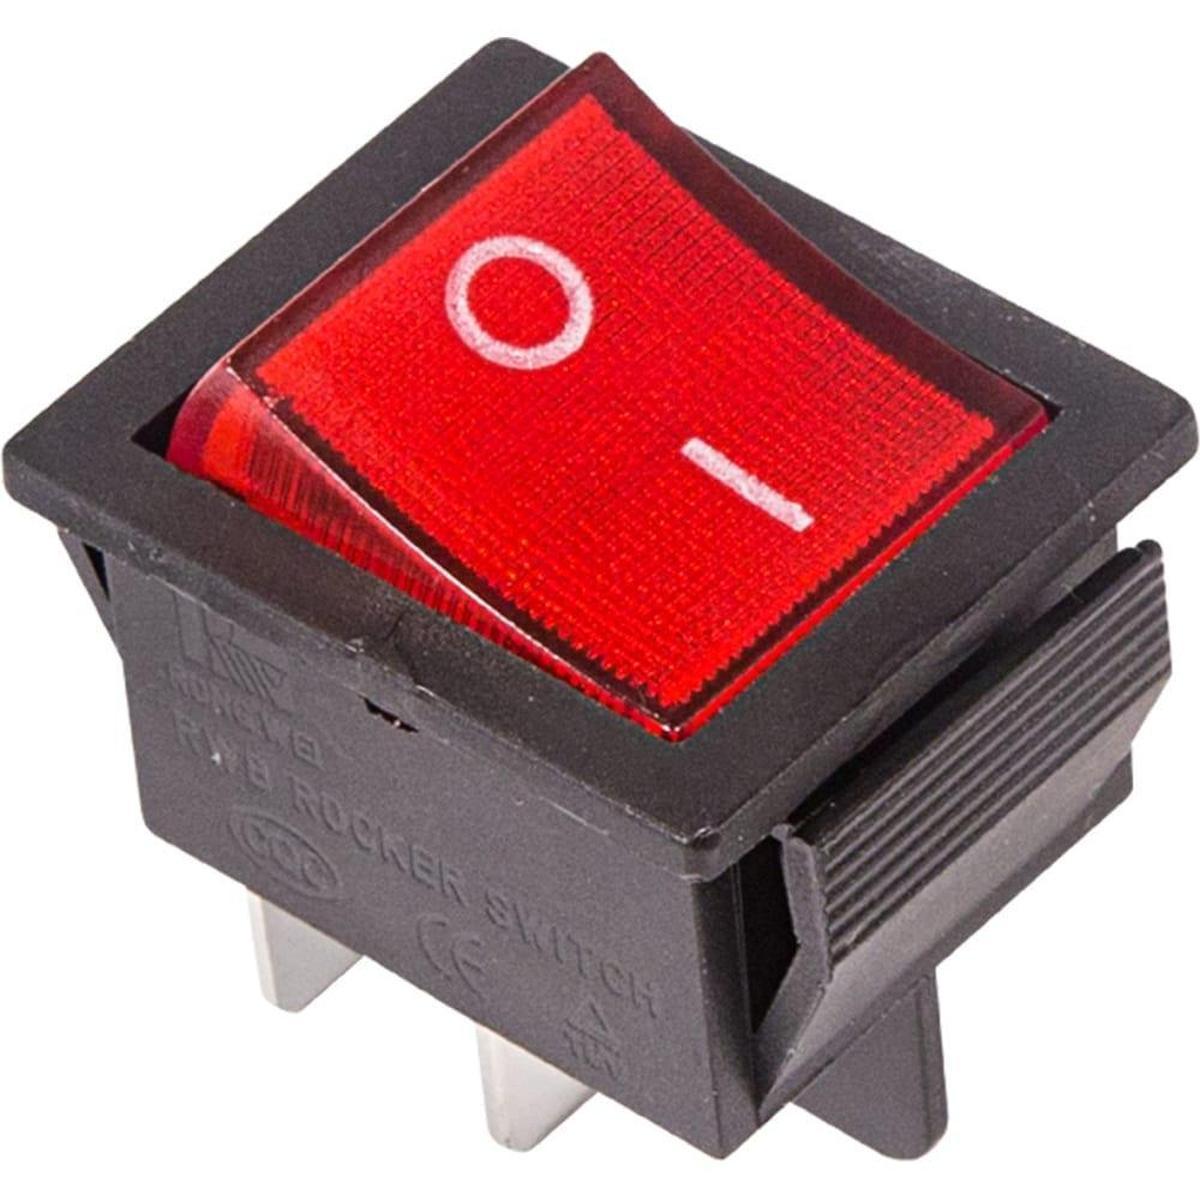 06-0303-B, Выключатель клавишный 250V 16А (4с) ON-OFF красный с подсветкой (RWB-502, SC-767, IRS-201-1) REXAN